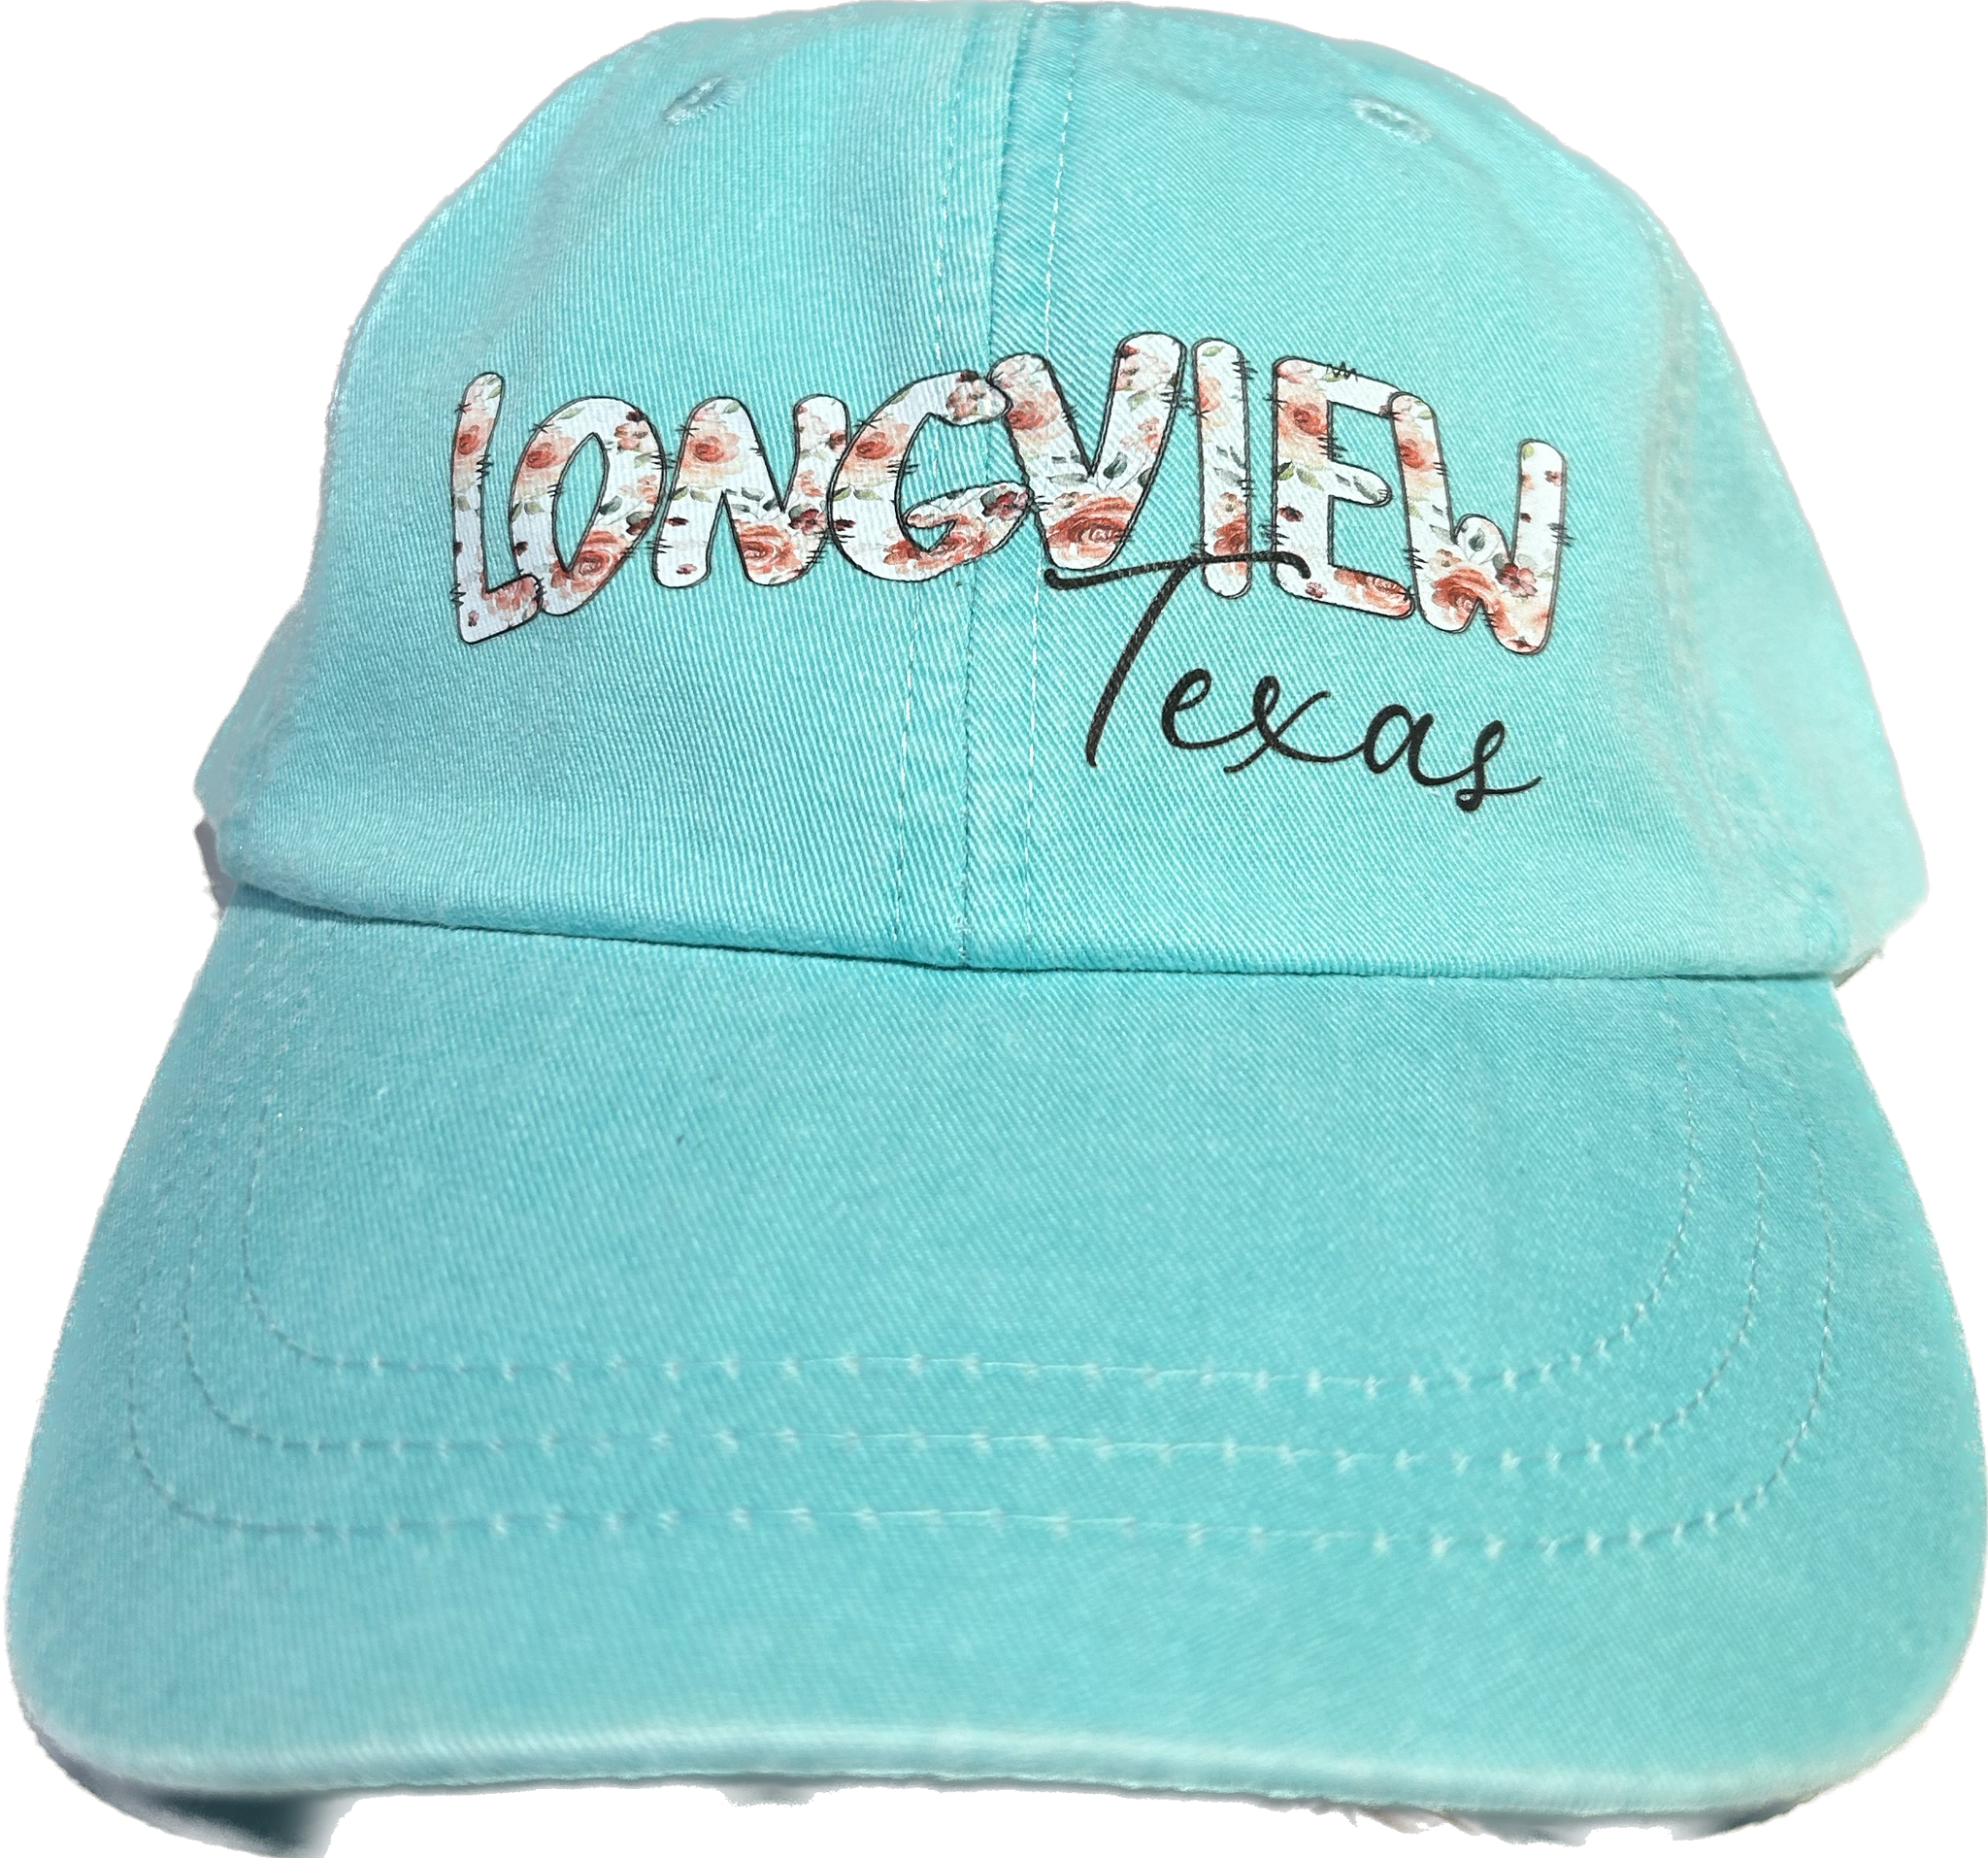 Longview Floral Hat